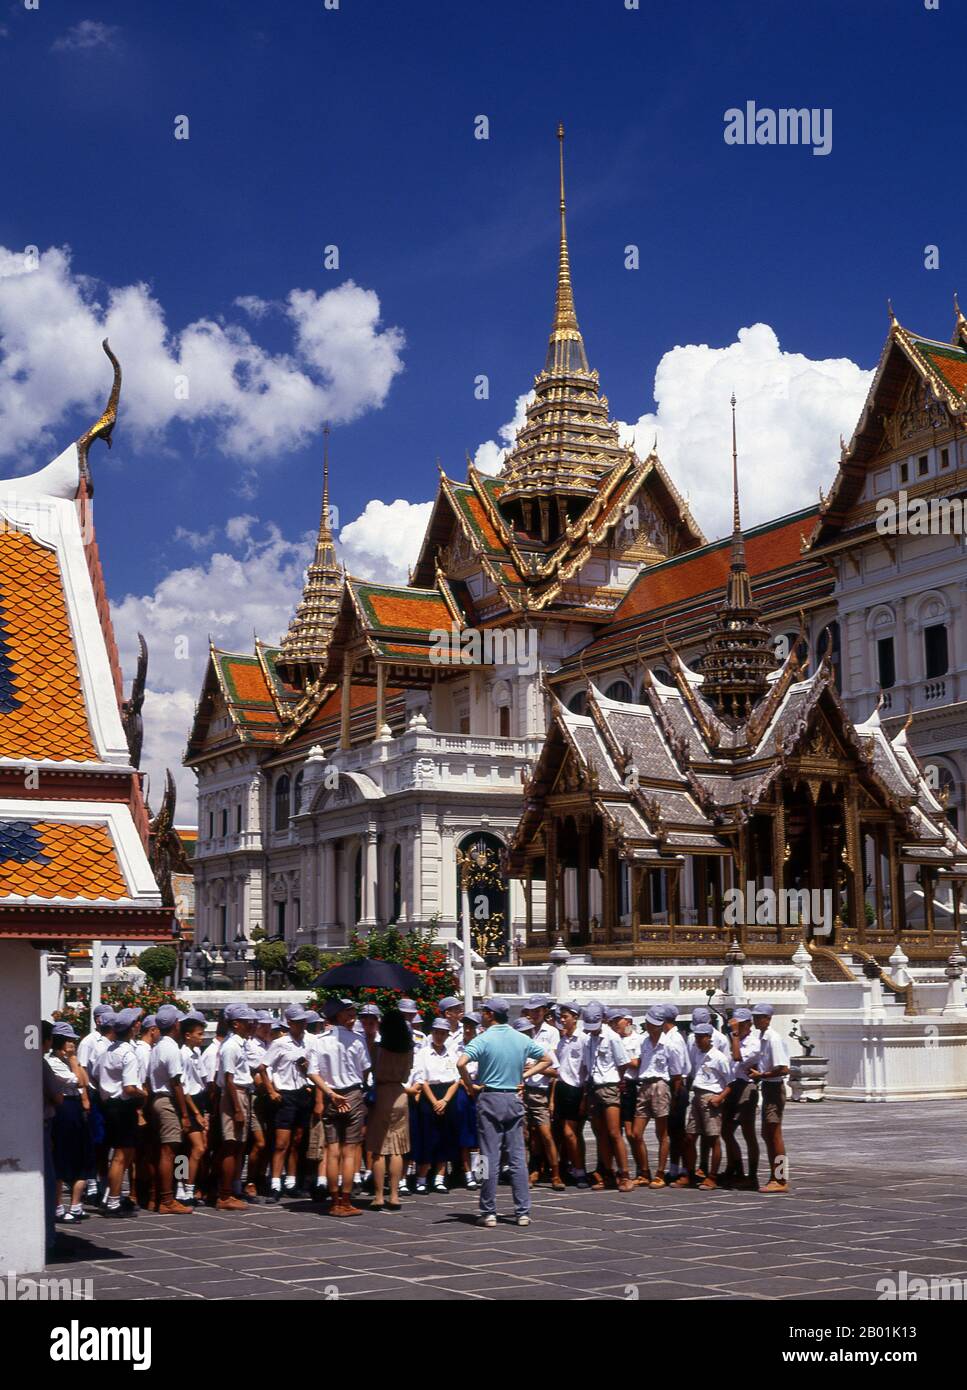 Thailand: Schüler bewundern den Phra Phinang Chakri Maha Prasat, den Großen Palast, Bangkok. Der große Palast diente ab dem 18. Jahrhundert als offizielle Residenz der Könige von Thailand. Der Bau des Palastes begann 1782 während der Regierungszeit von König Rama I., als er die Hauptstadt über den Fluss von Thonburi nach Bangkok verlegte. Stockfoto